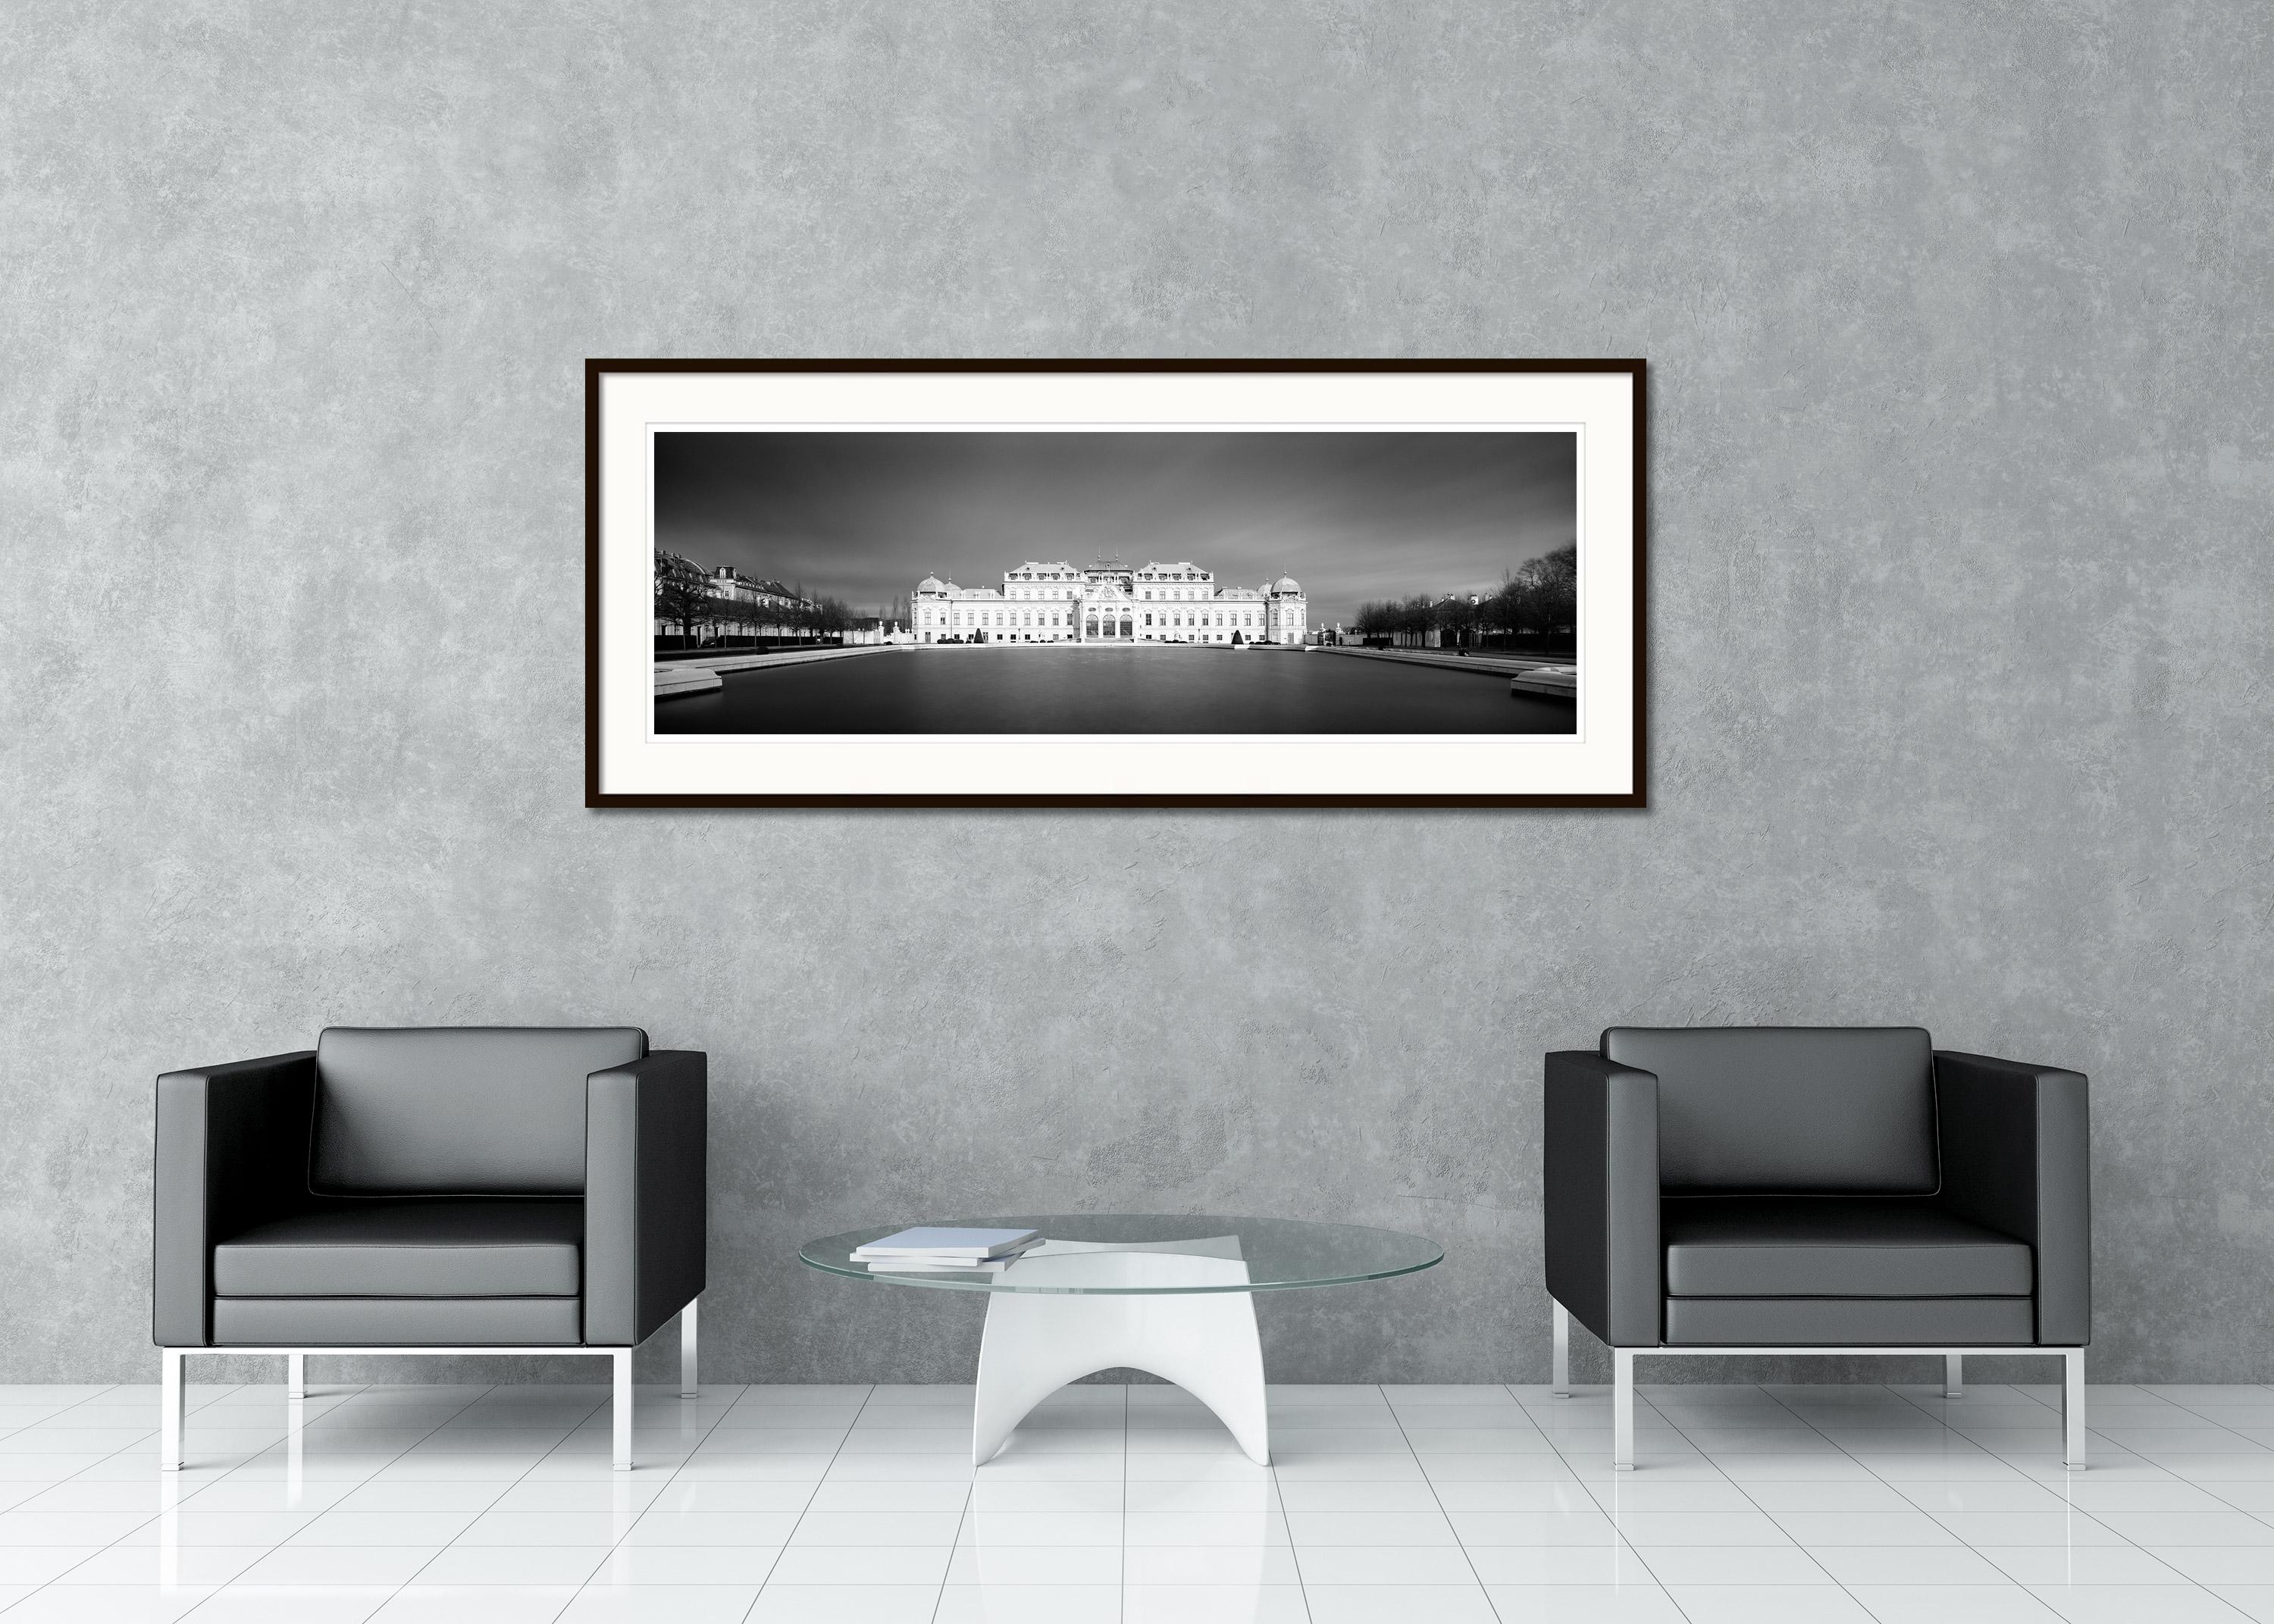 Schwarz-Weiß-Panorama-Landschaftsfotografie - Stadtbildfotografie. Schloss Belvedere mit Wasserfontäne während eines Gewitters mit dunklem Himmel, Wien, Österreich. Pigmenttintendruck, Auflage 9, signiert, betitelt, datiert und nummeriert vom